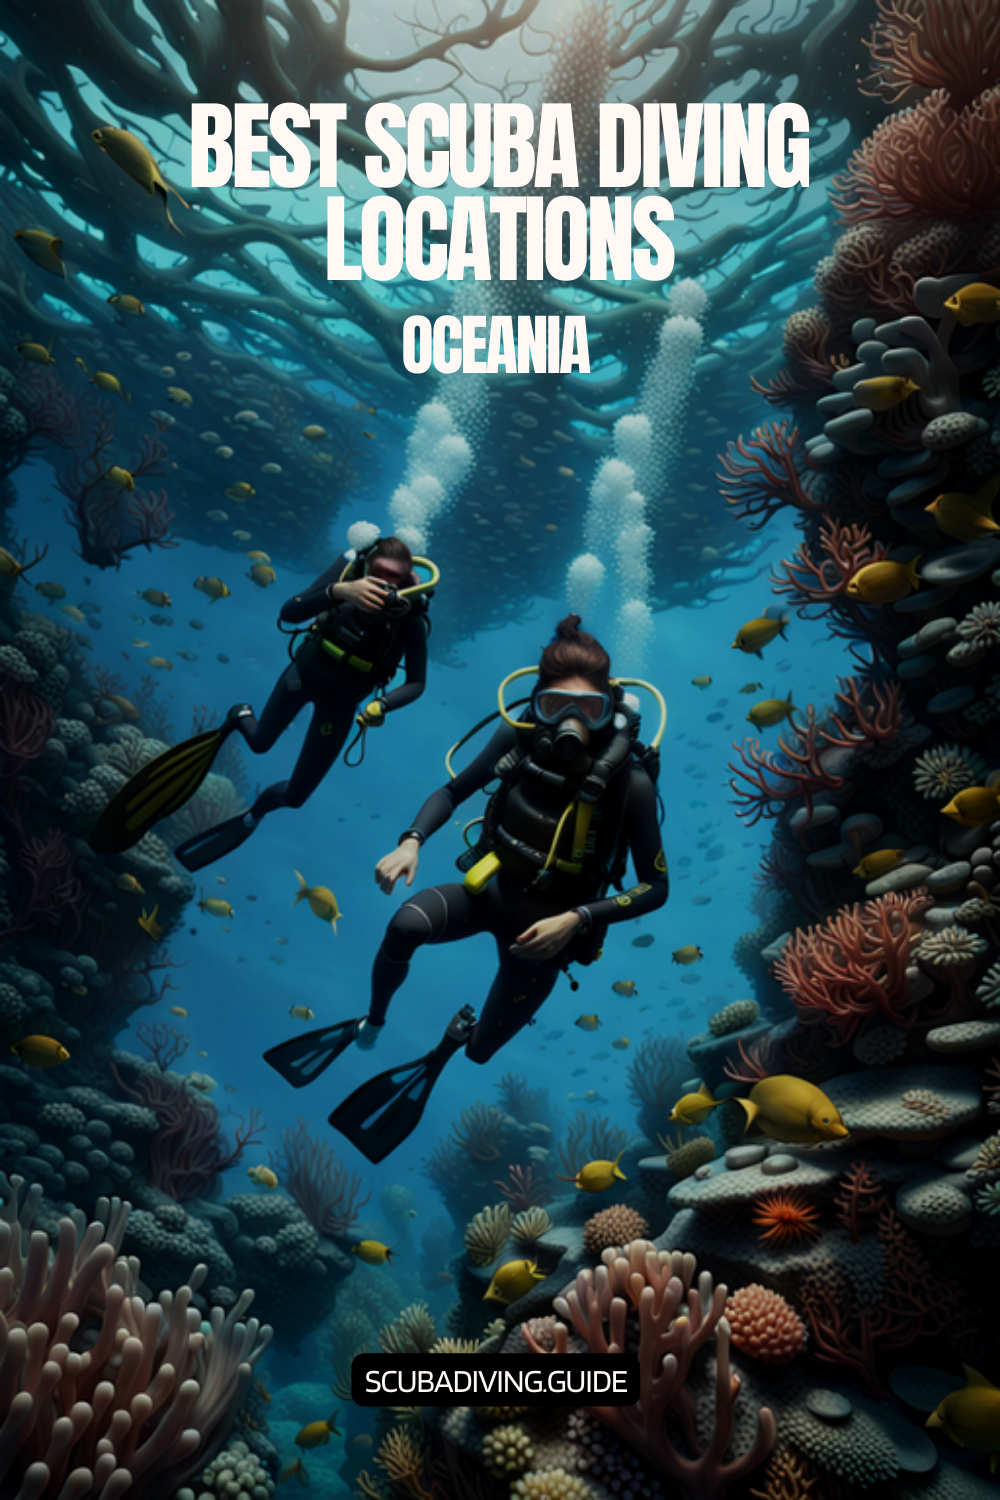 Scuba Diving Locations in Oceania